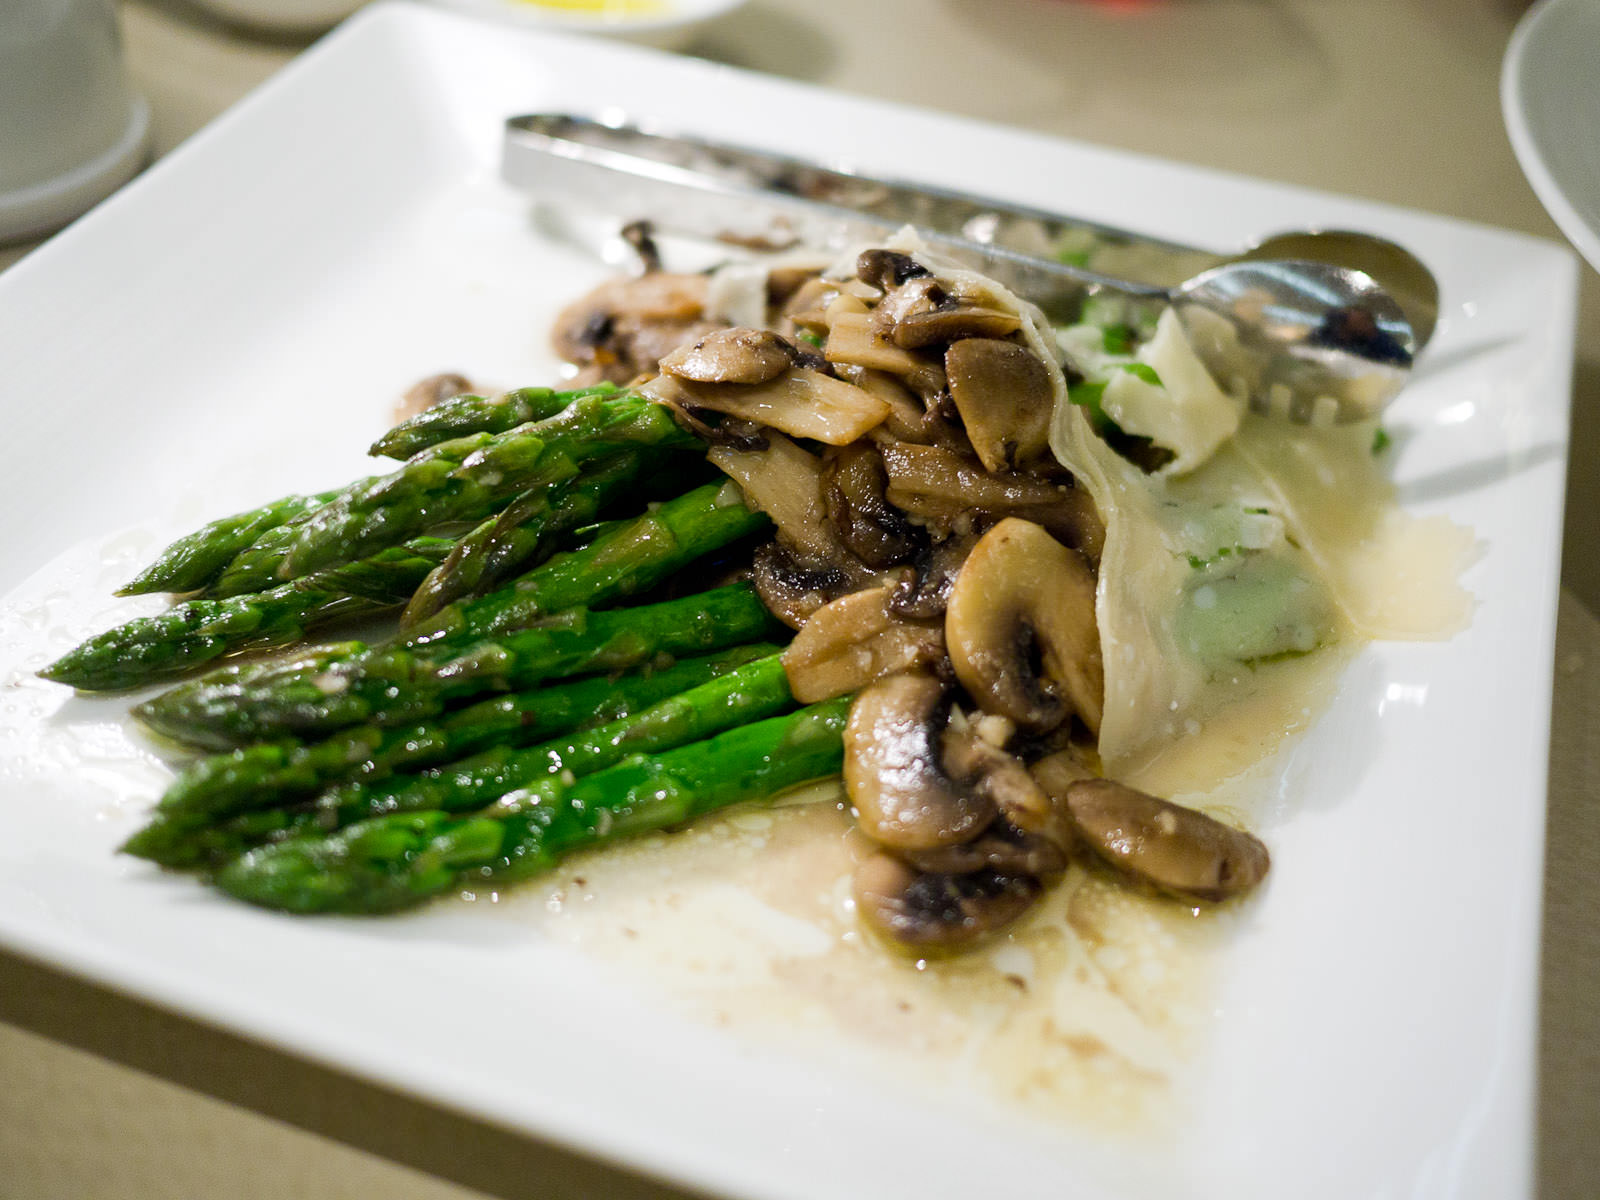 Sauteed asparagus and mushroom, AU$10